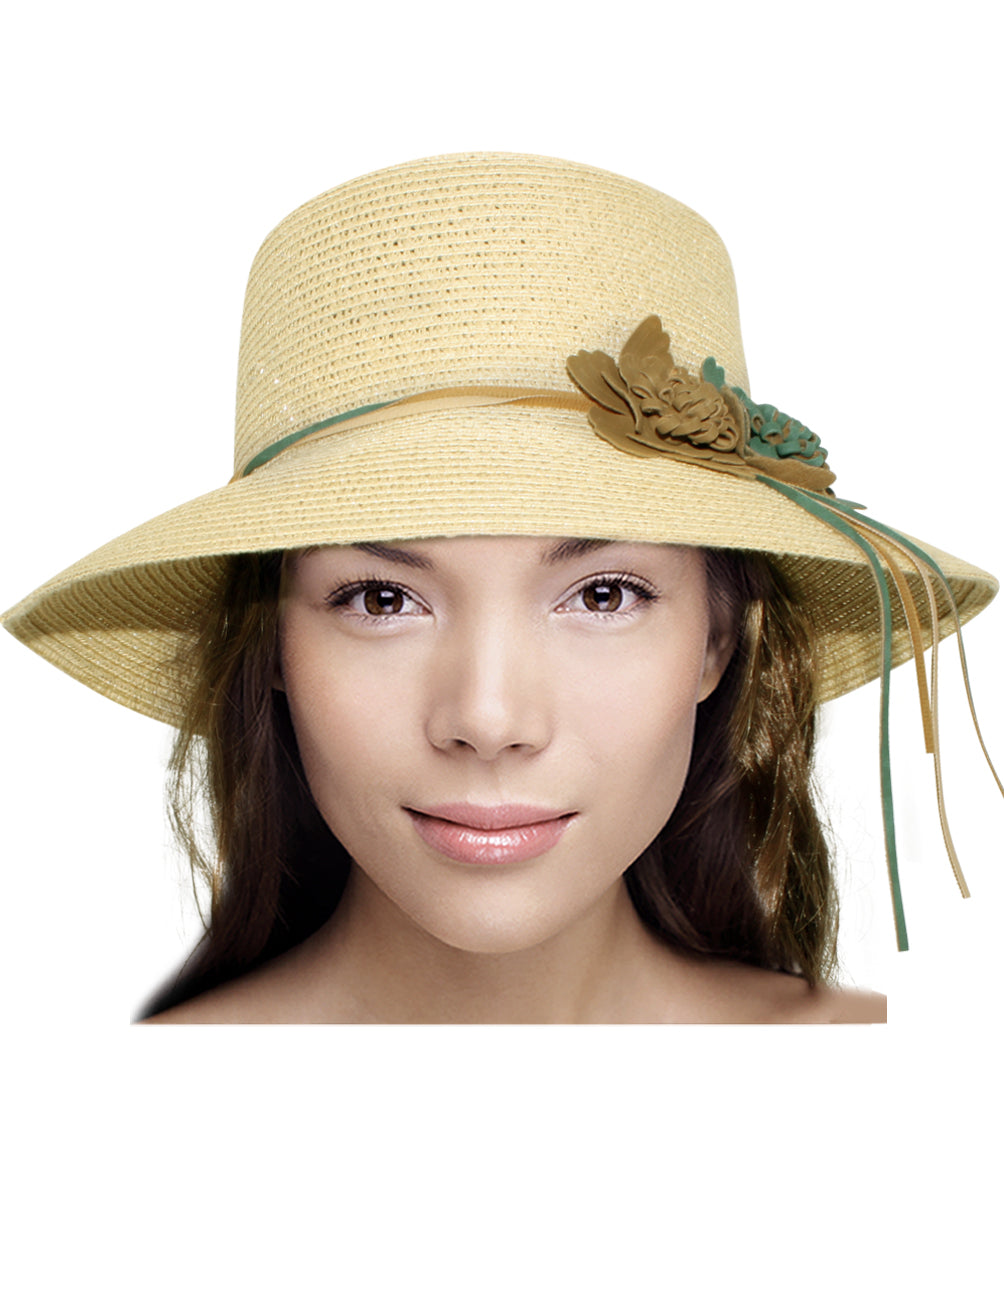 Dahlia Double Suede Flower Straw Bucket Summer Sun Hat - Cream